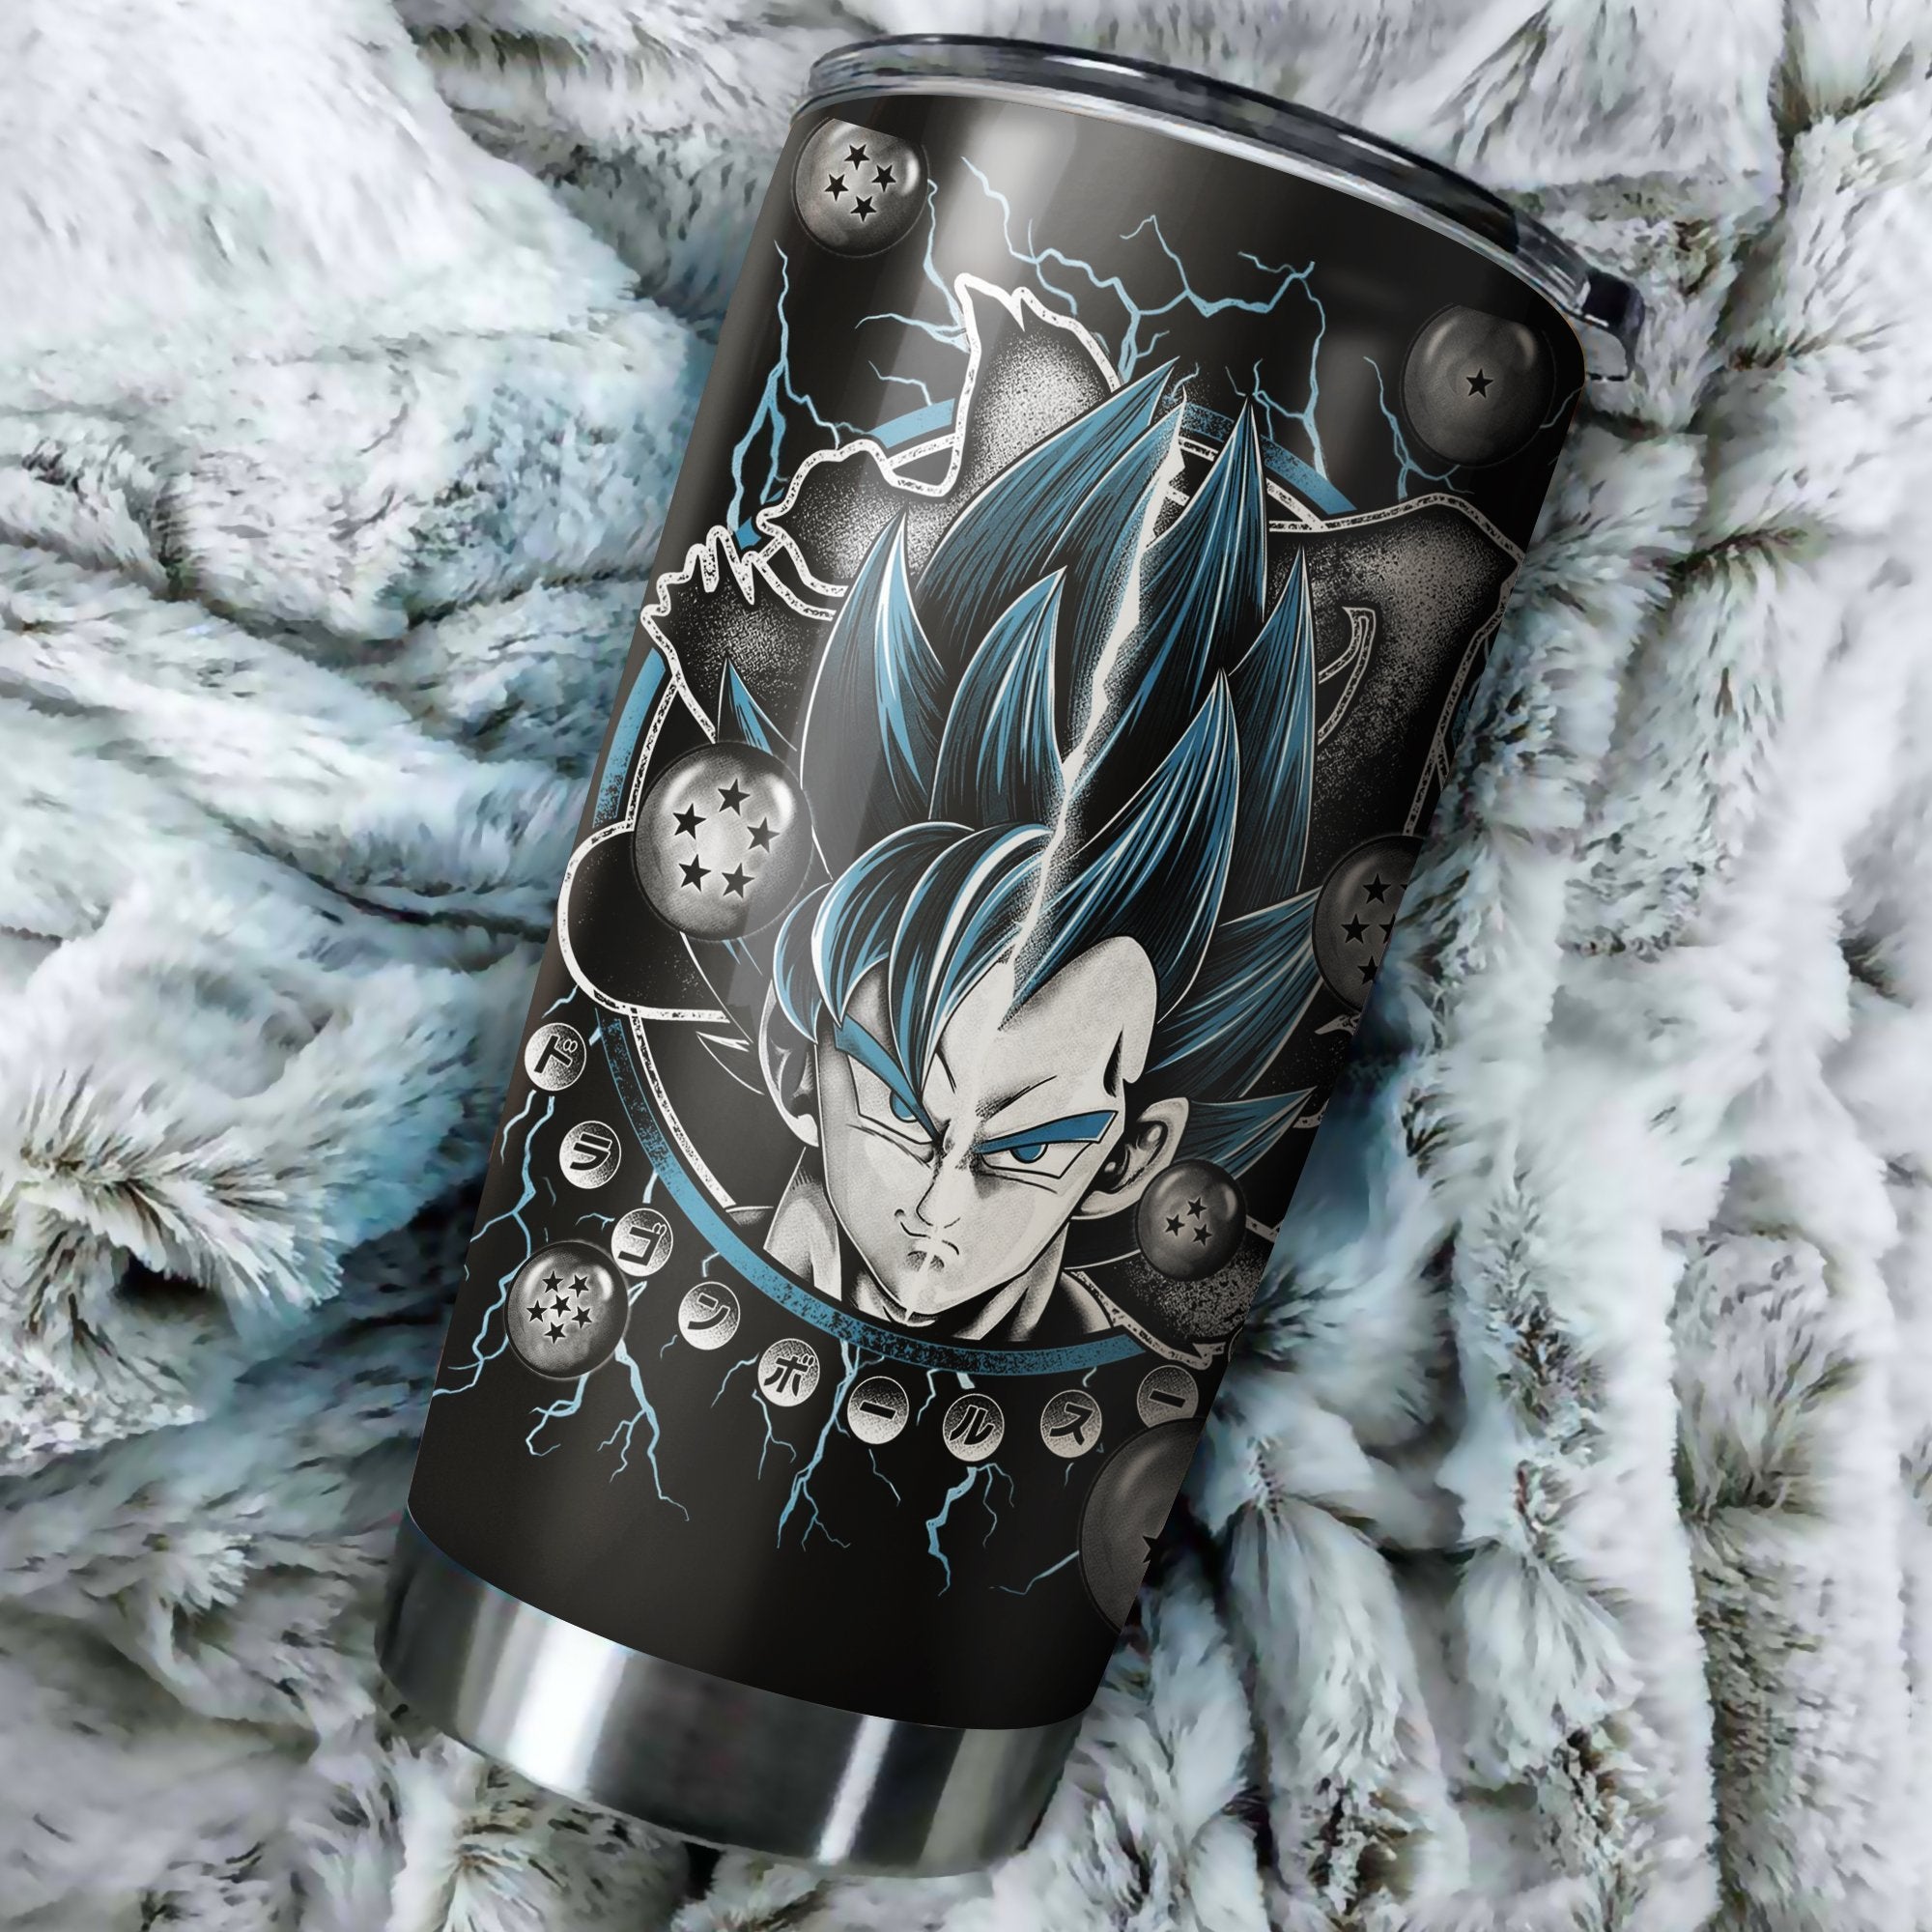 Goku Vegeta Super Saiyan Blue Tumbler Perfect Birthday Best Gift Stainless Traveling Mugs 2021